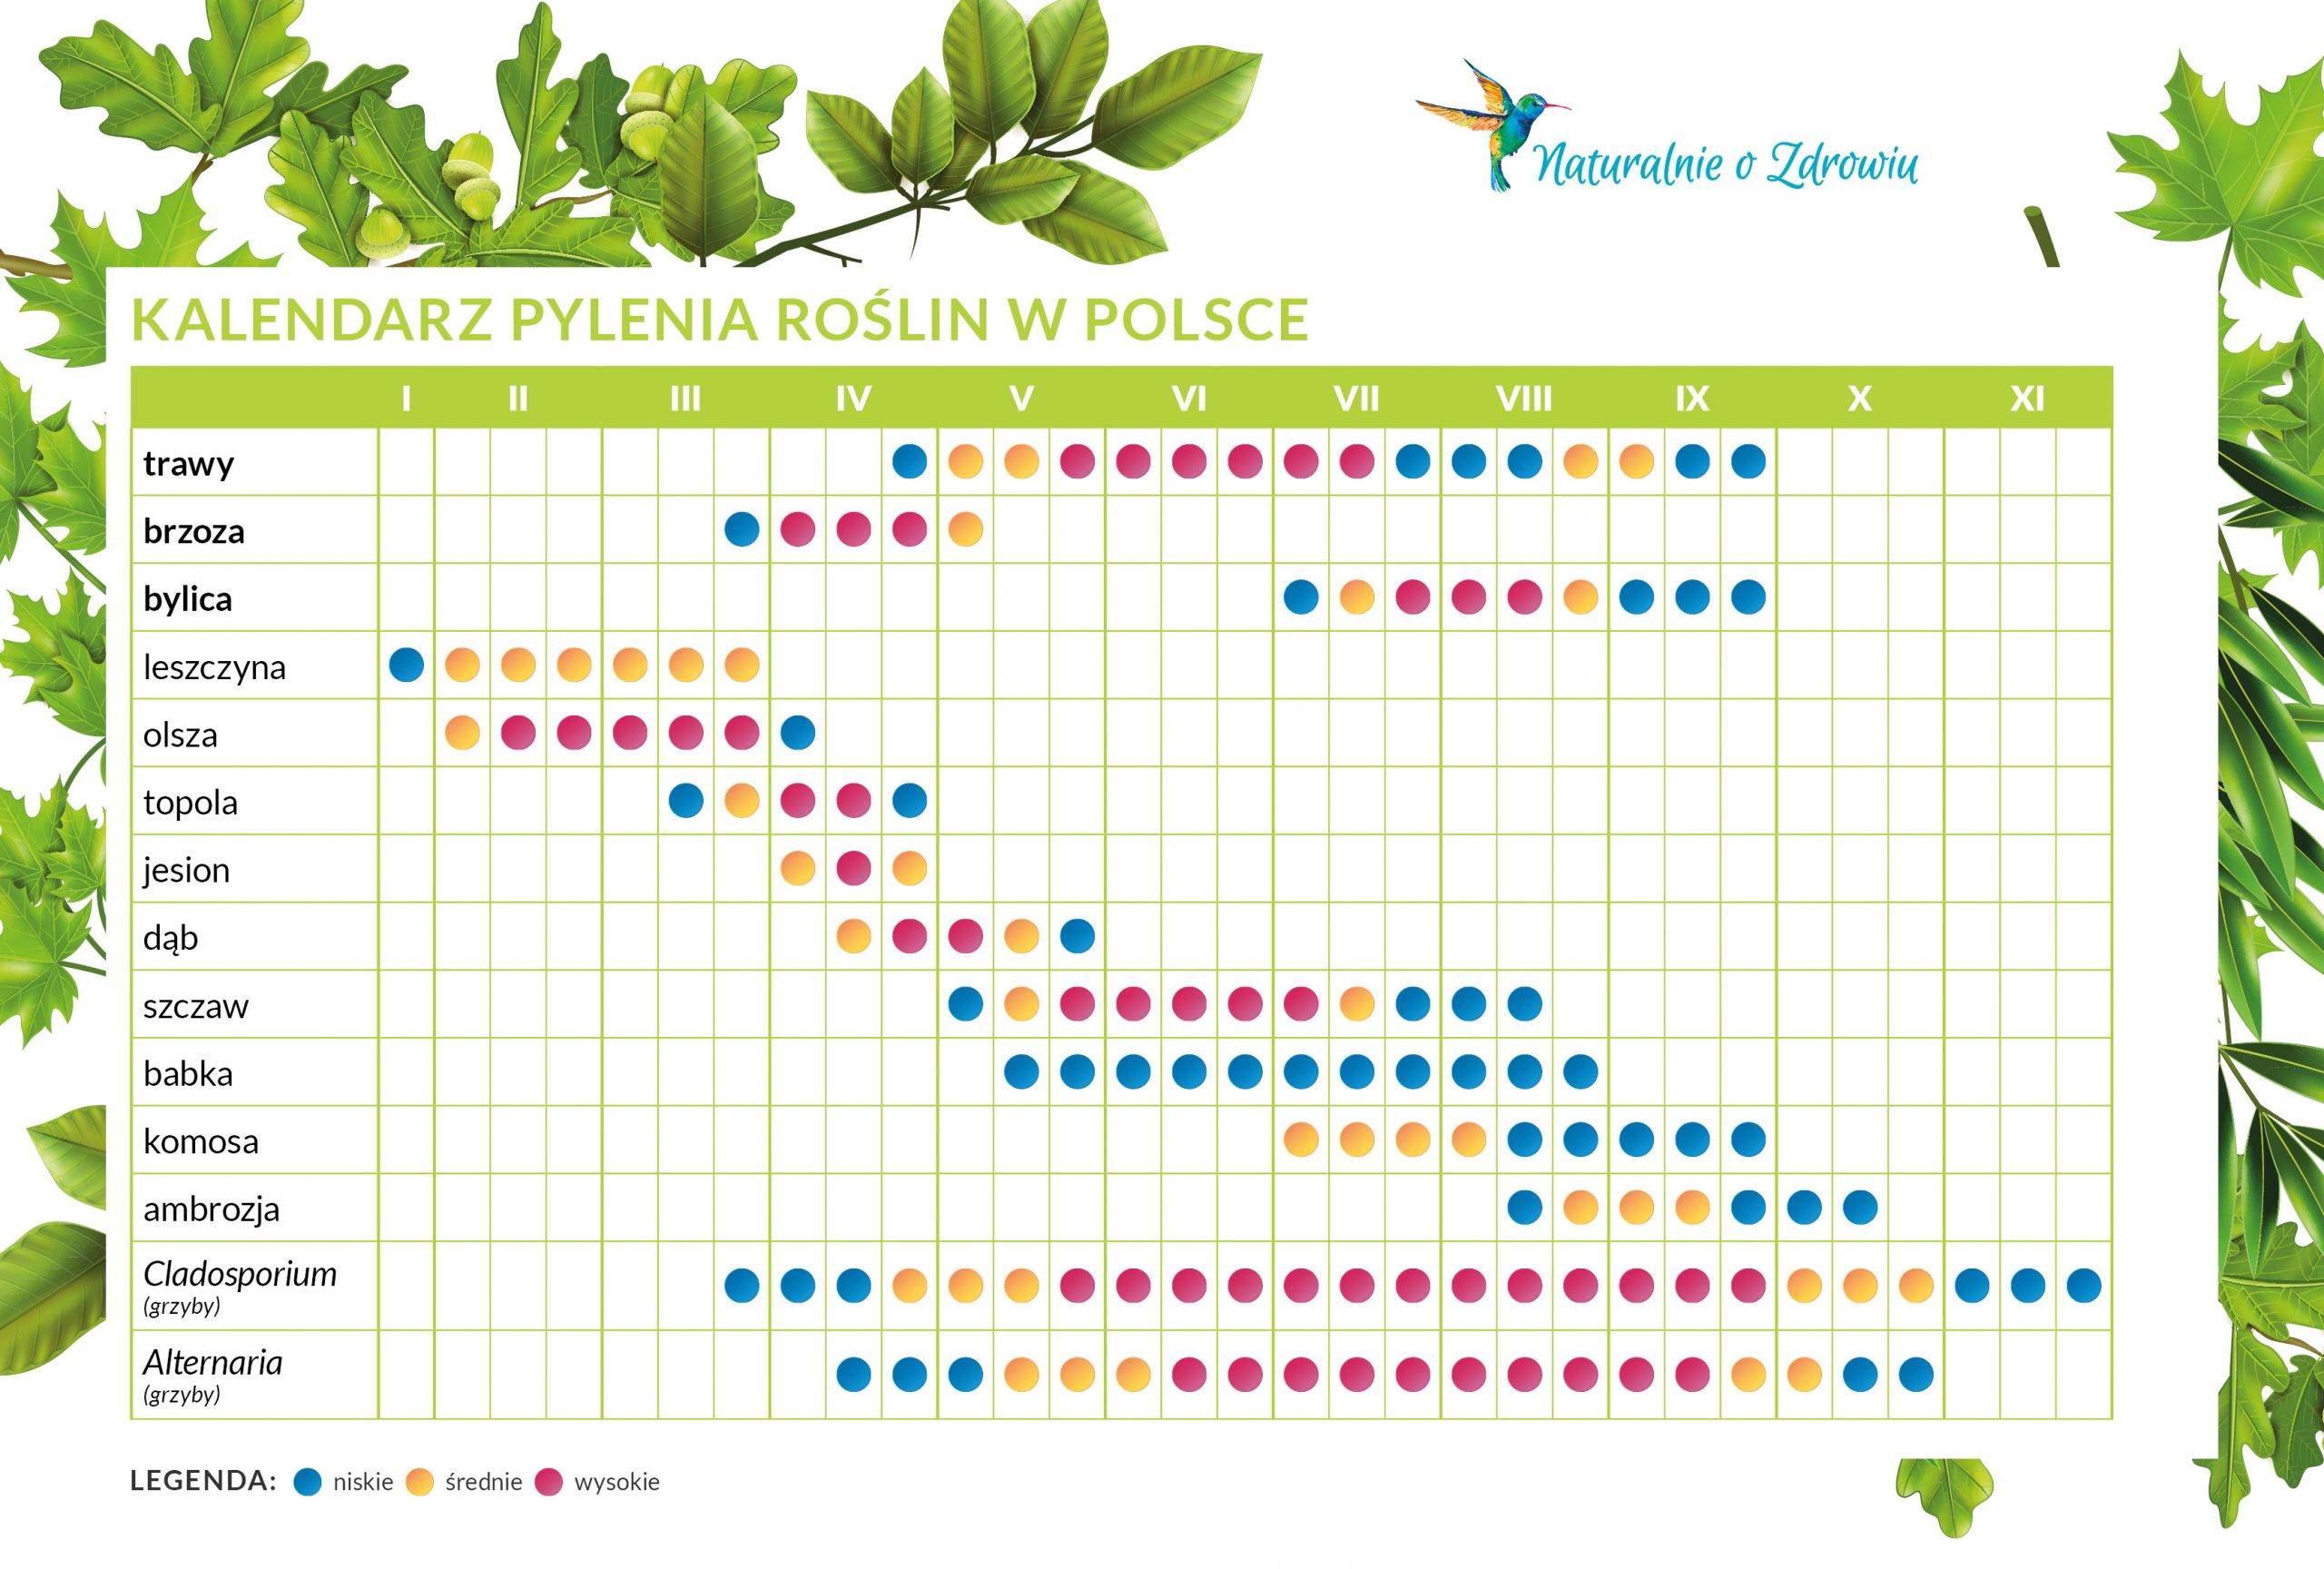 Kalendarz pylenia roślin w Polsce - co teraz pyli? Infografika z podziałem na rodzaj alergenu i miesiące.